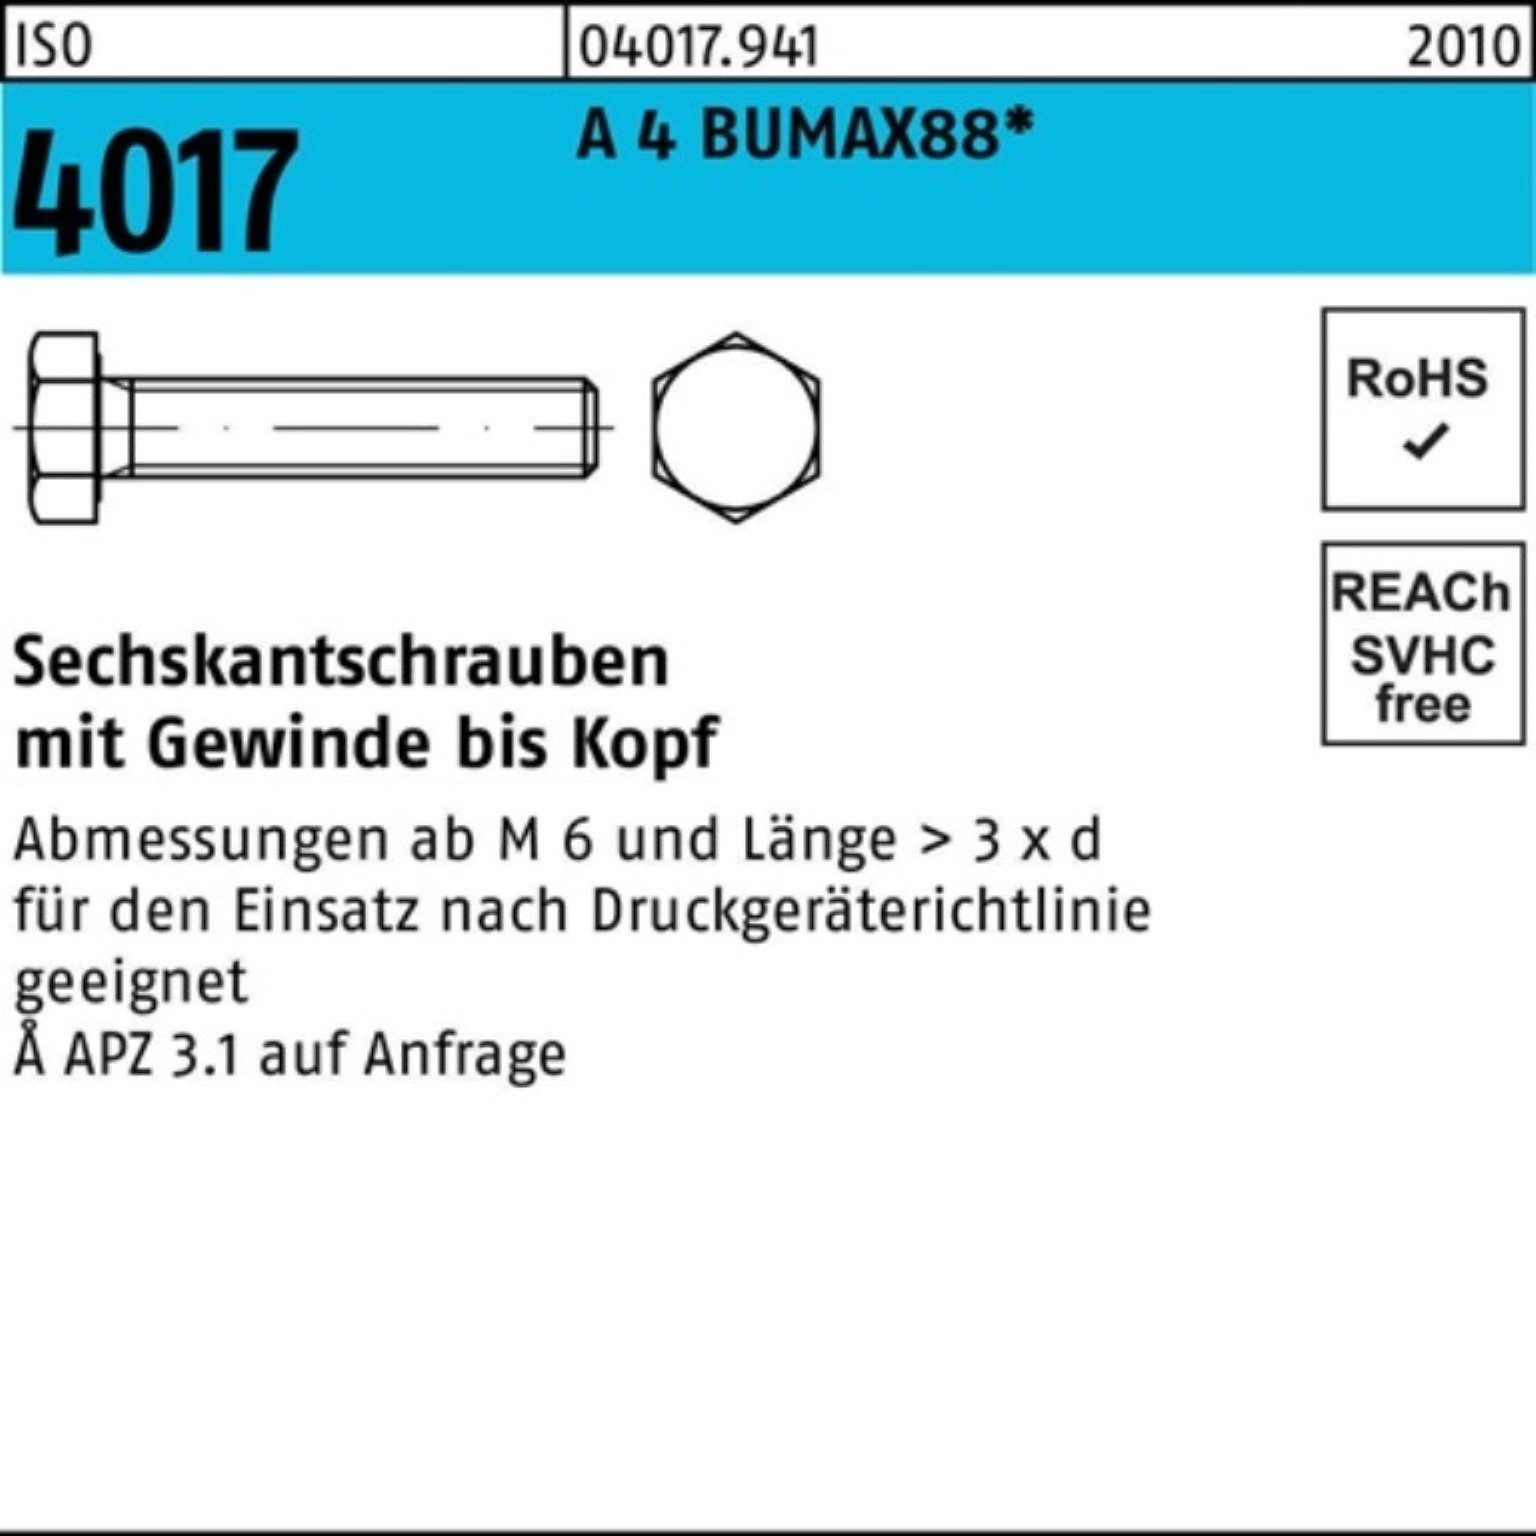 A 30 Stück Sechskantschraube BUMAX88 Pack Bufab 100 Sechskantschraube 4 M6x VG 100er 4017 ISO